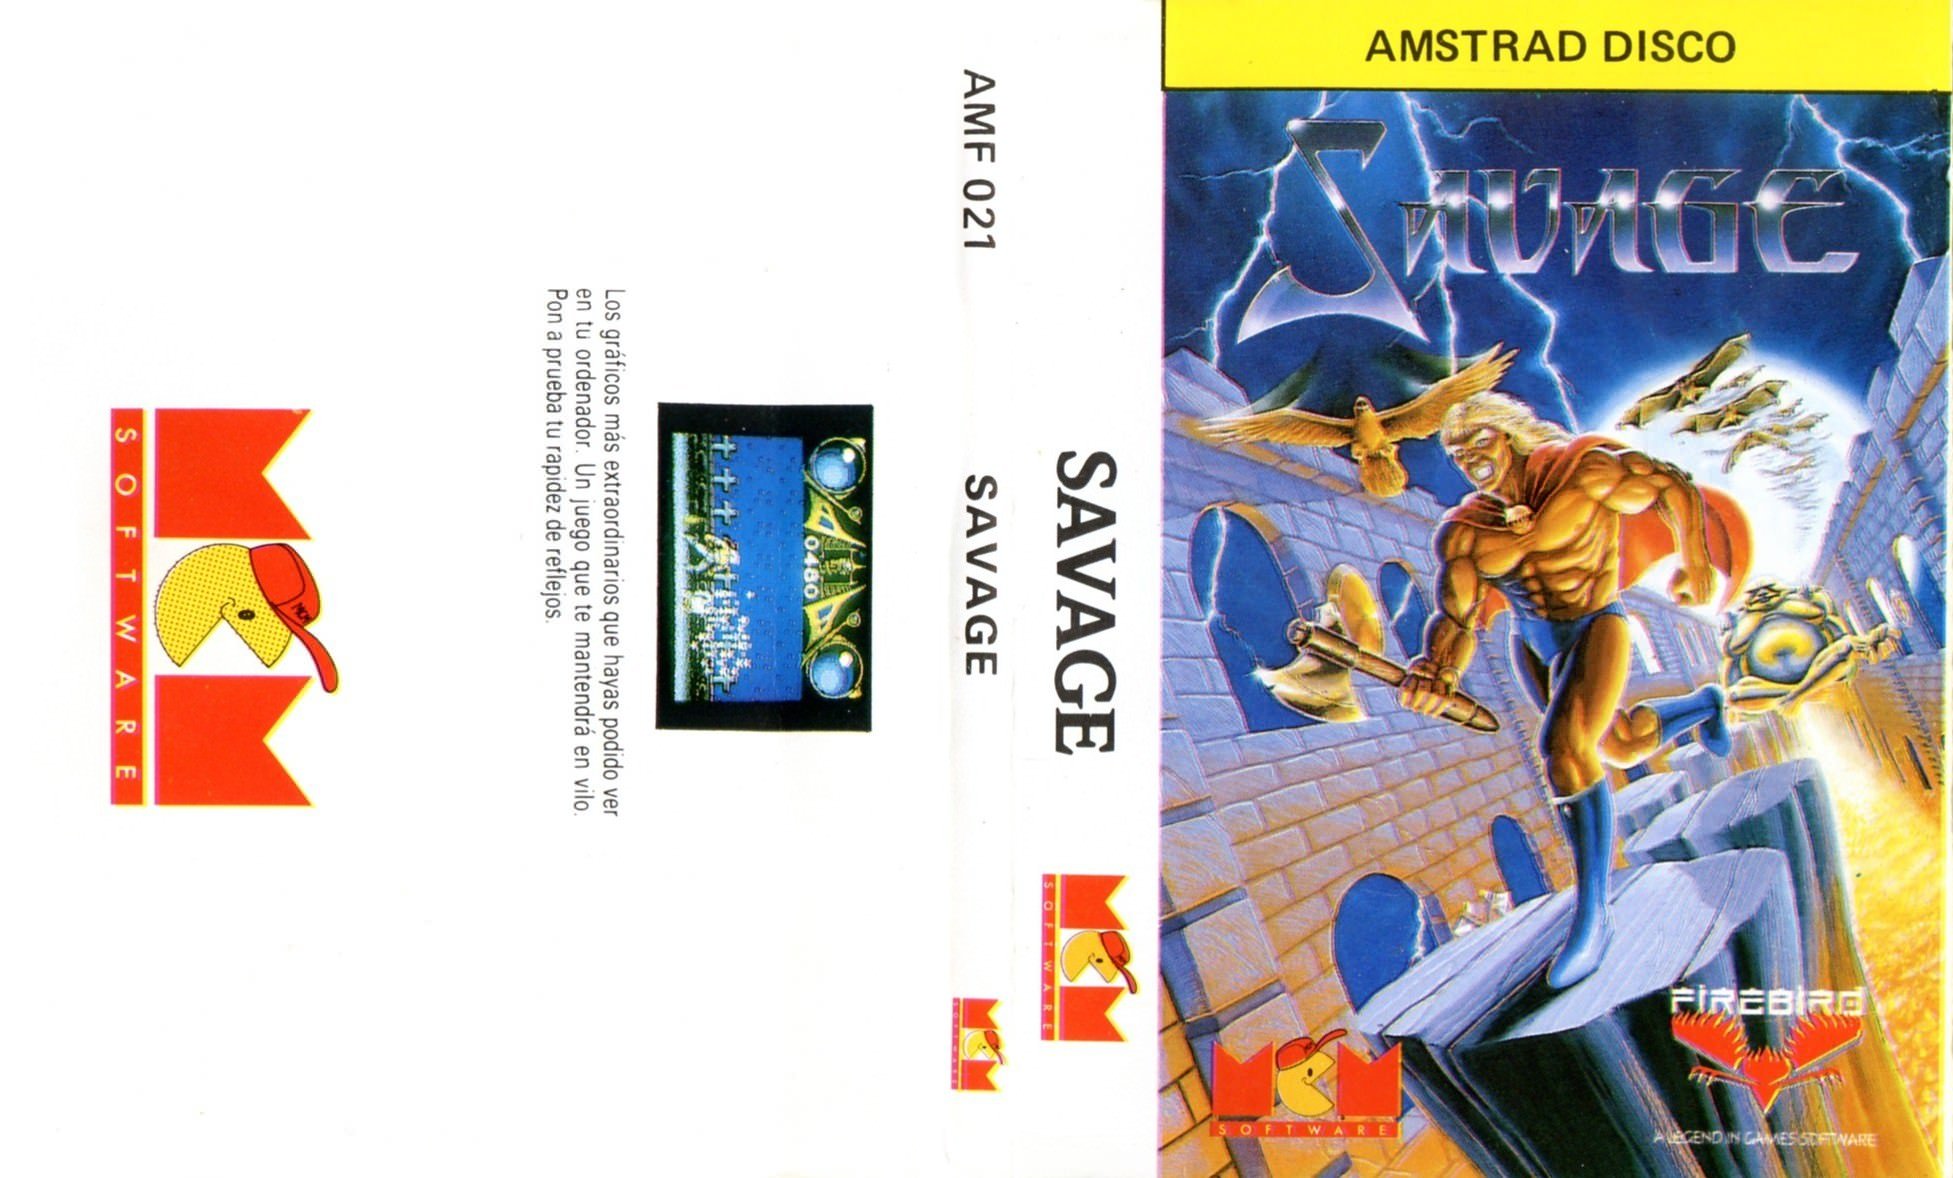 Caratula de Savage para Amstrad CPC